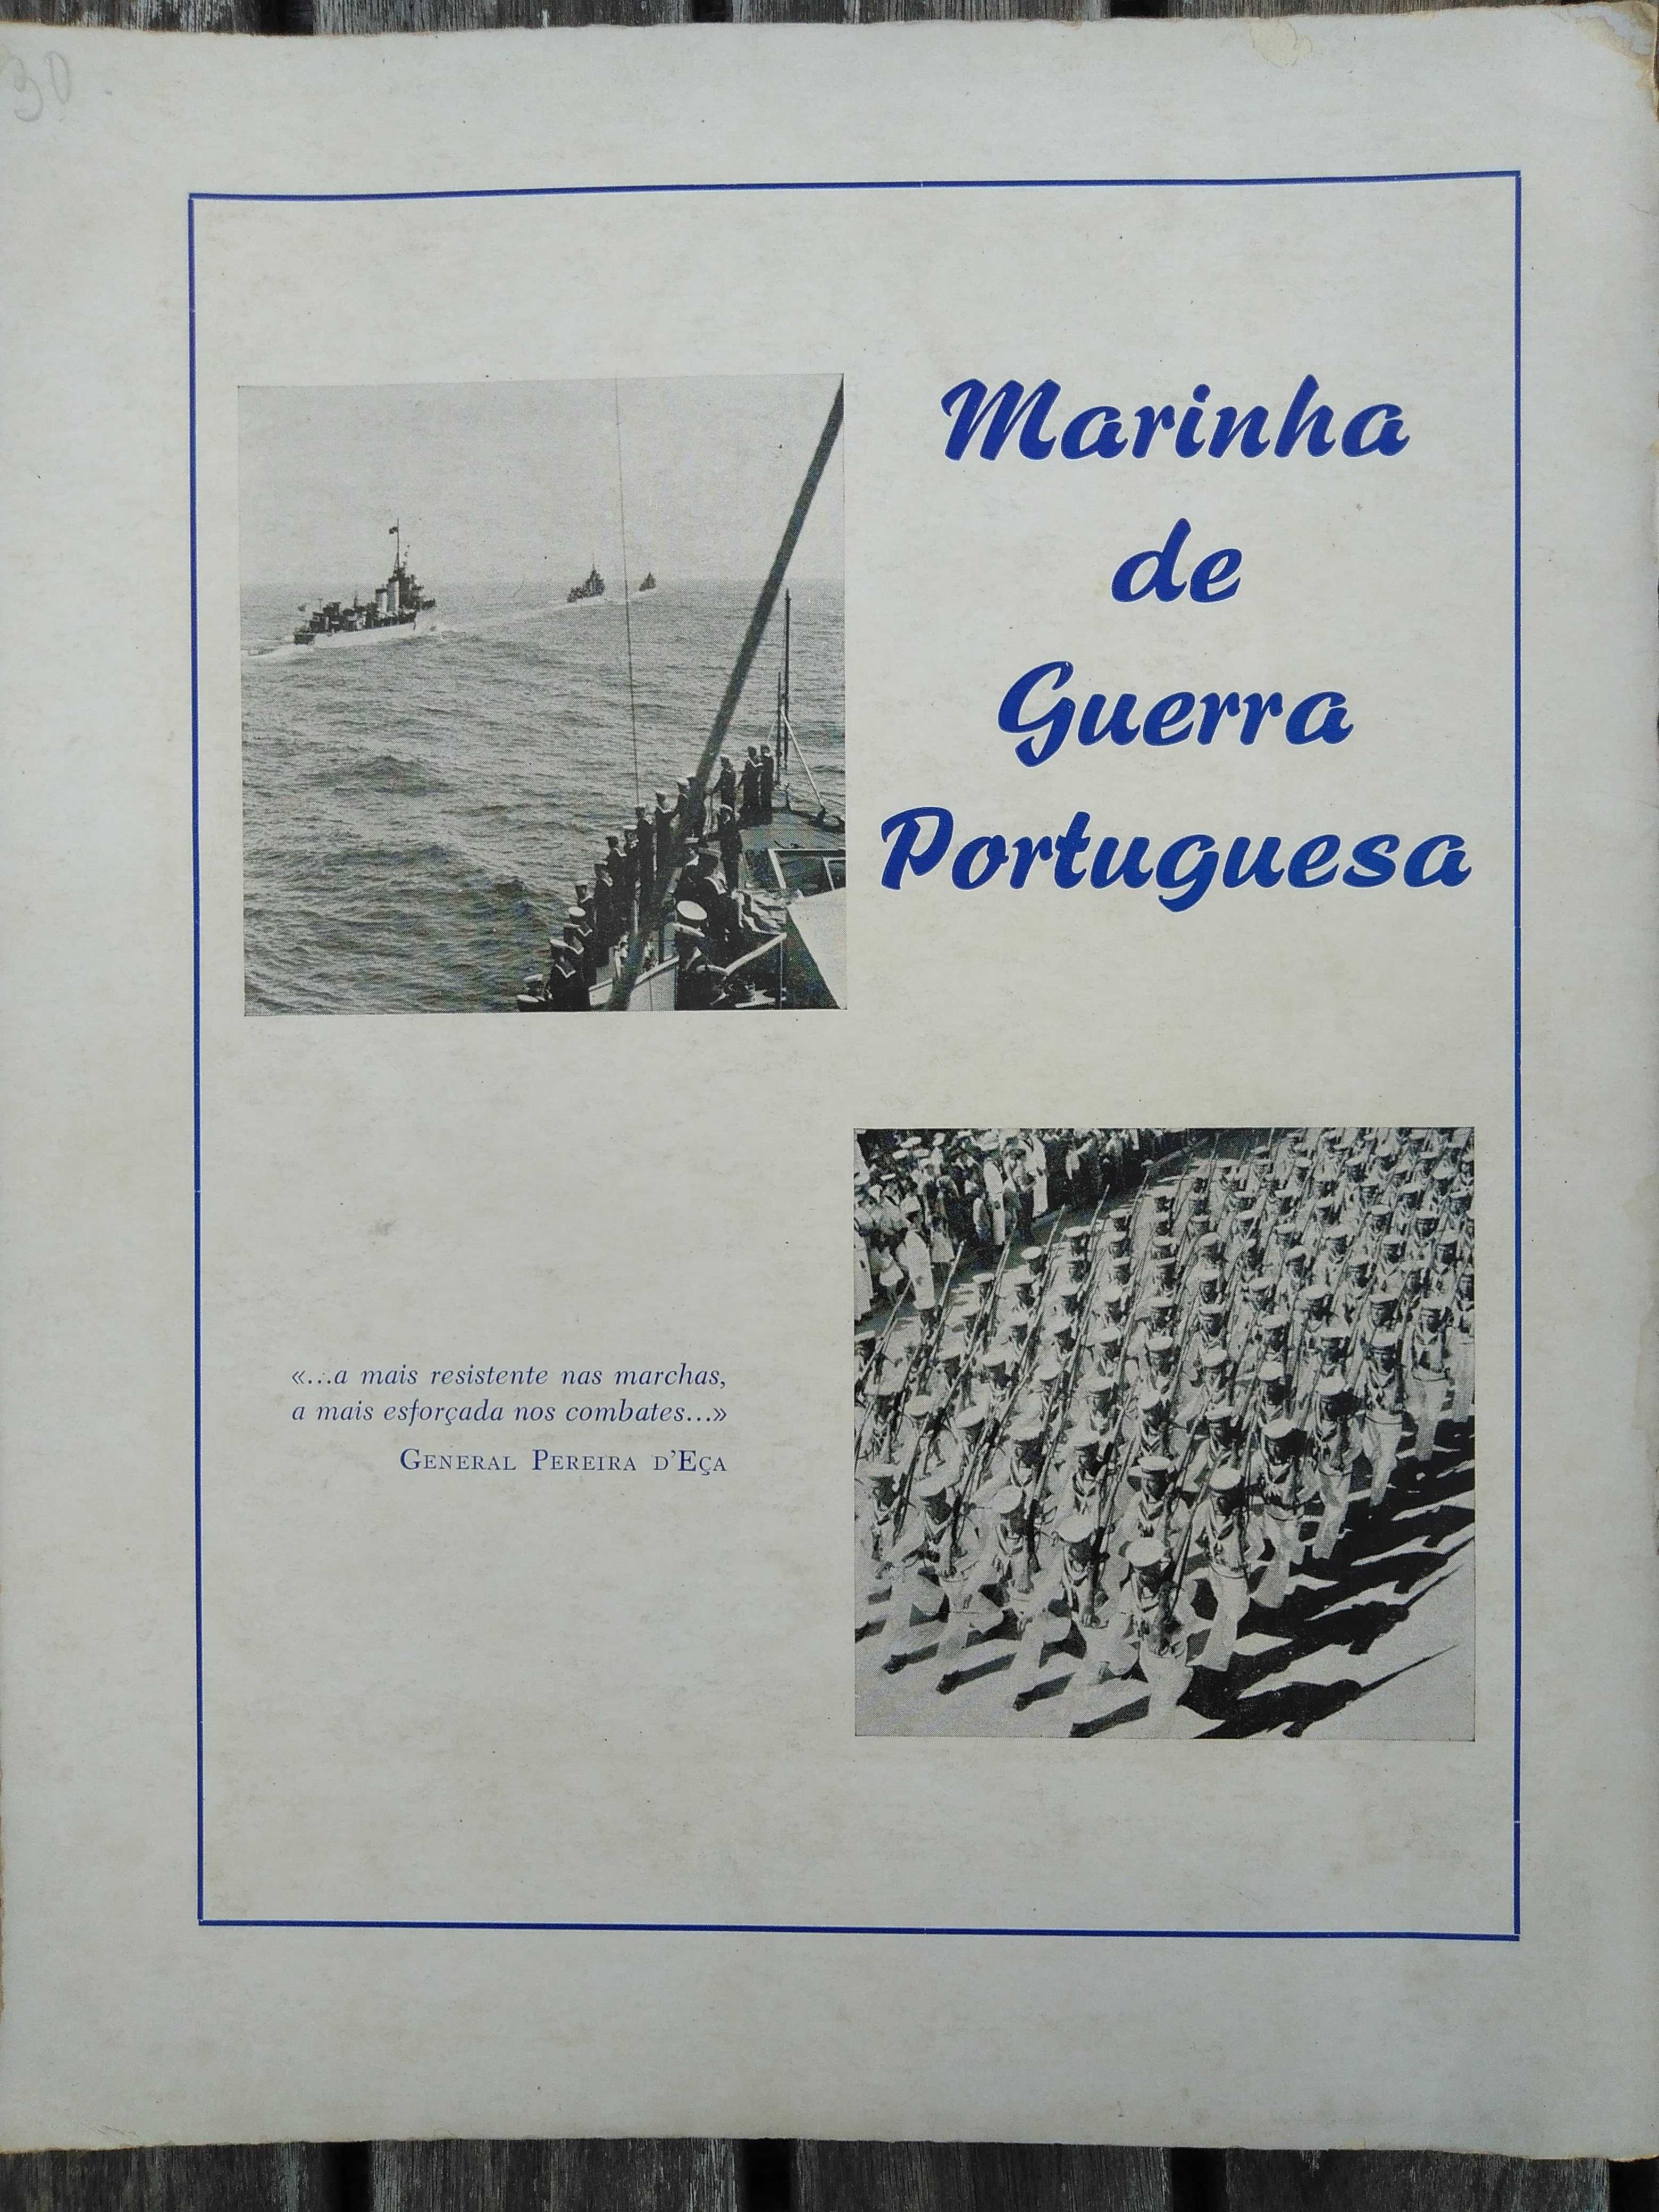 livro: “Marinha de guerra portuguesa”